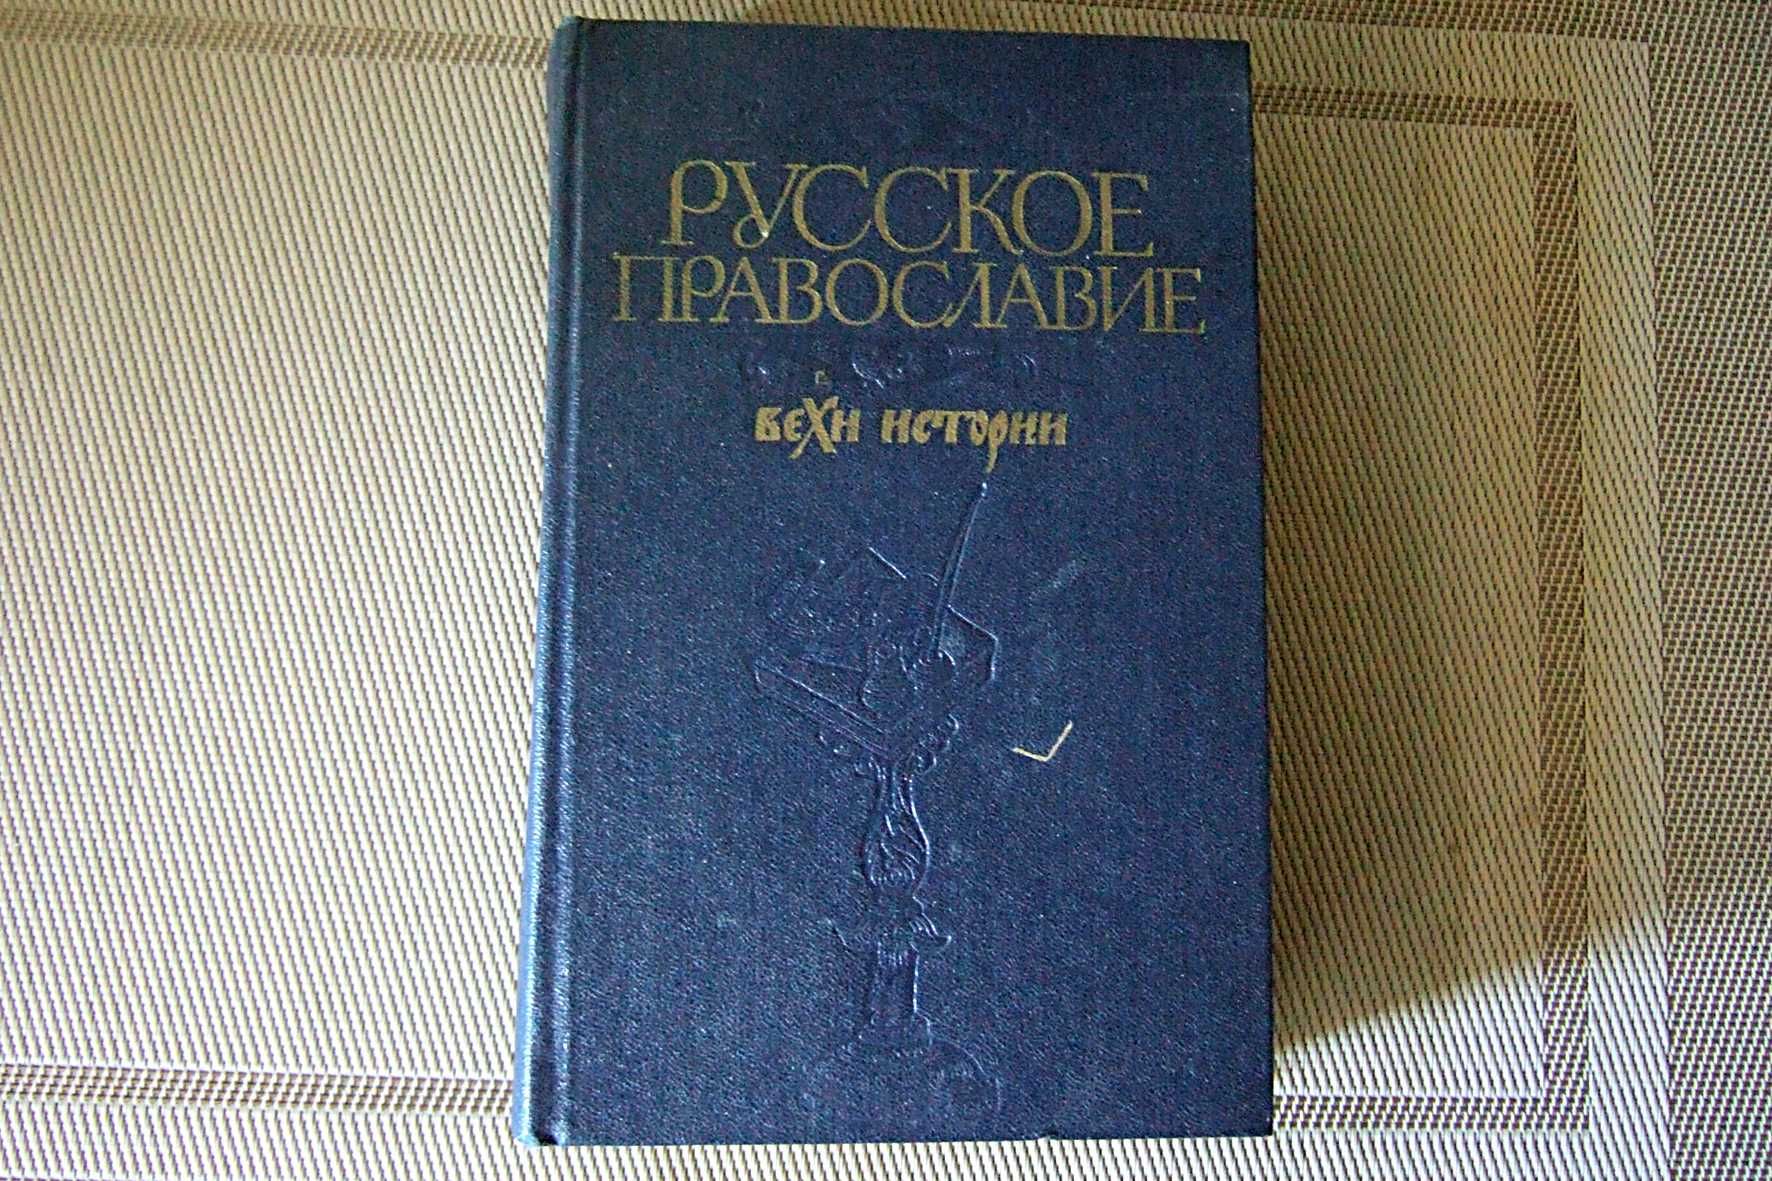 Книга Русское православие. Вехи истории. 1989 г.